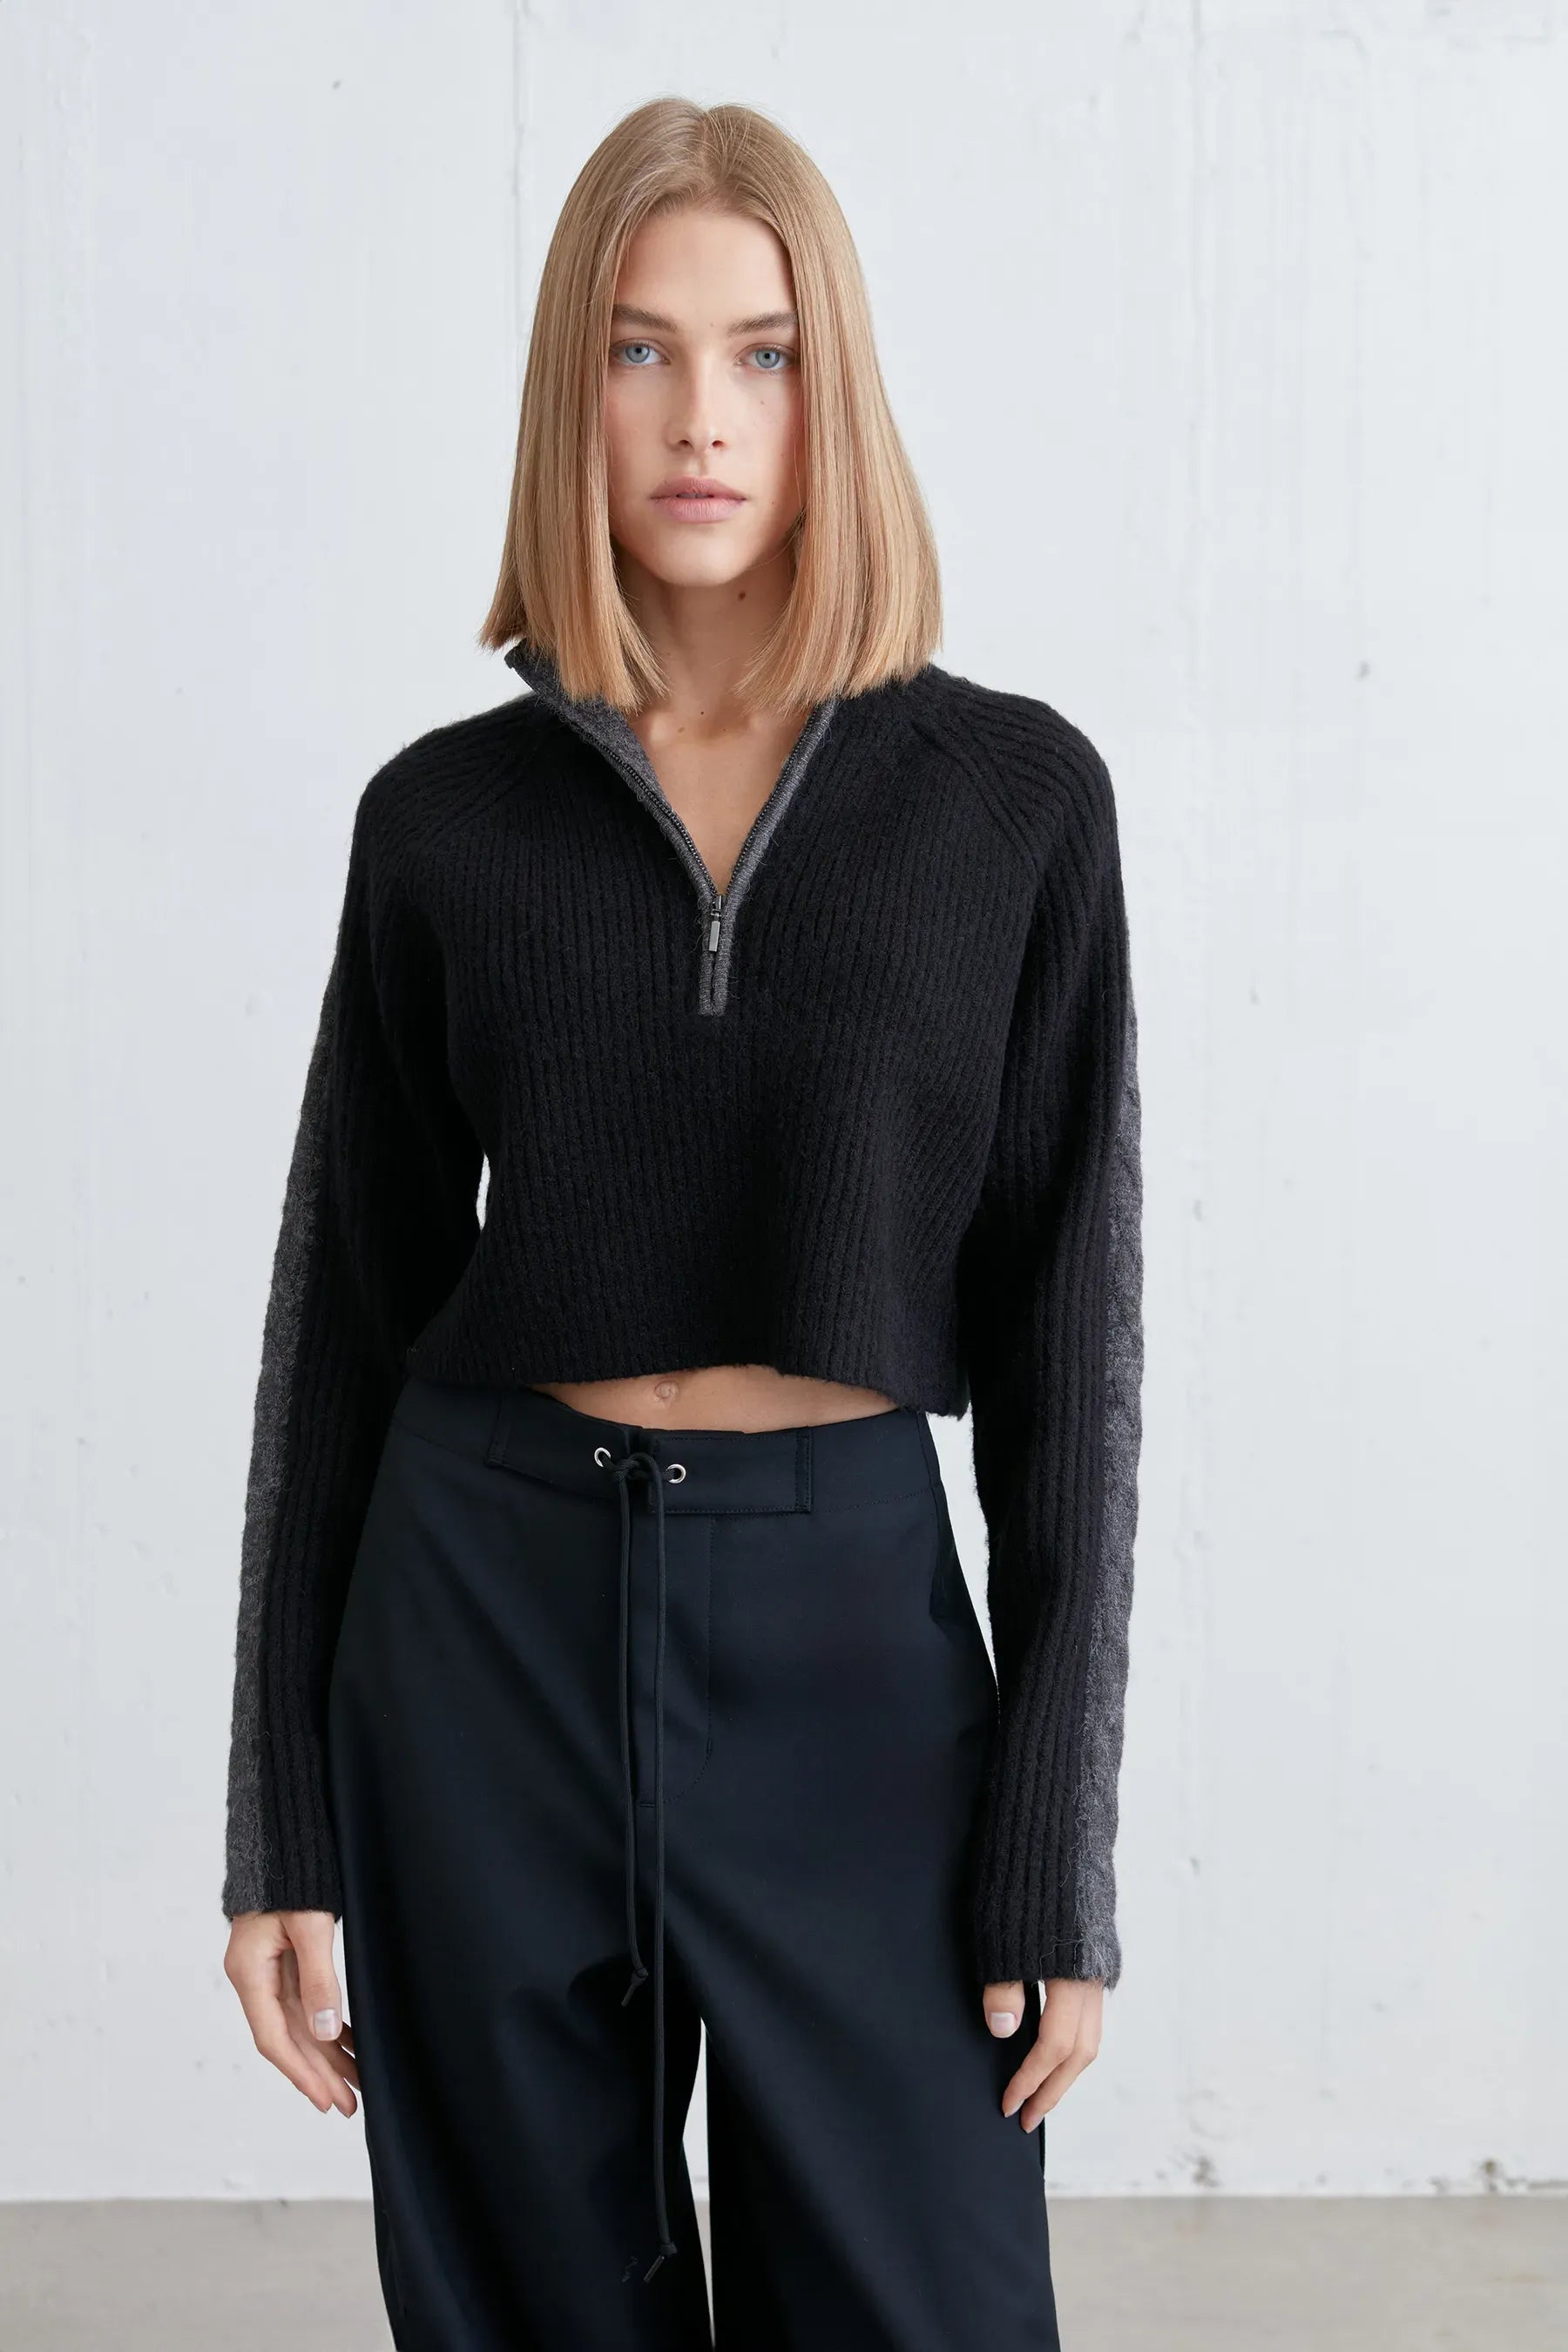 Half Zip Sweater With Contrast Details